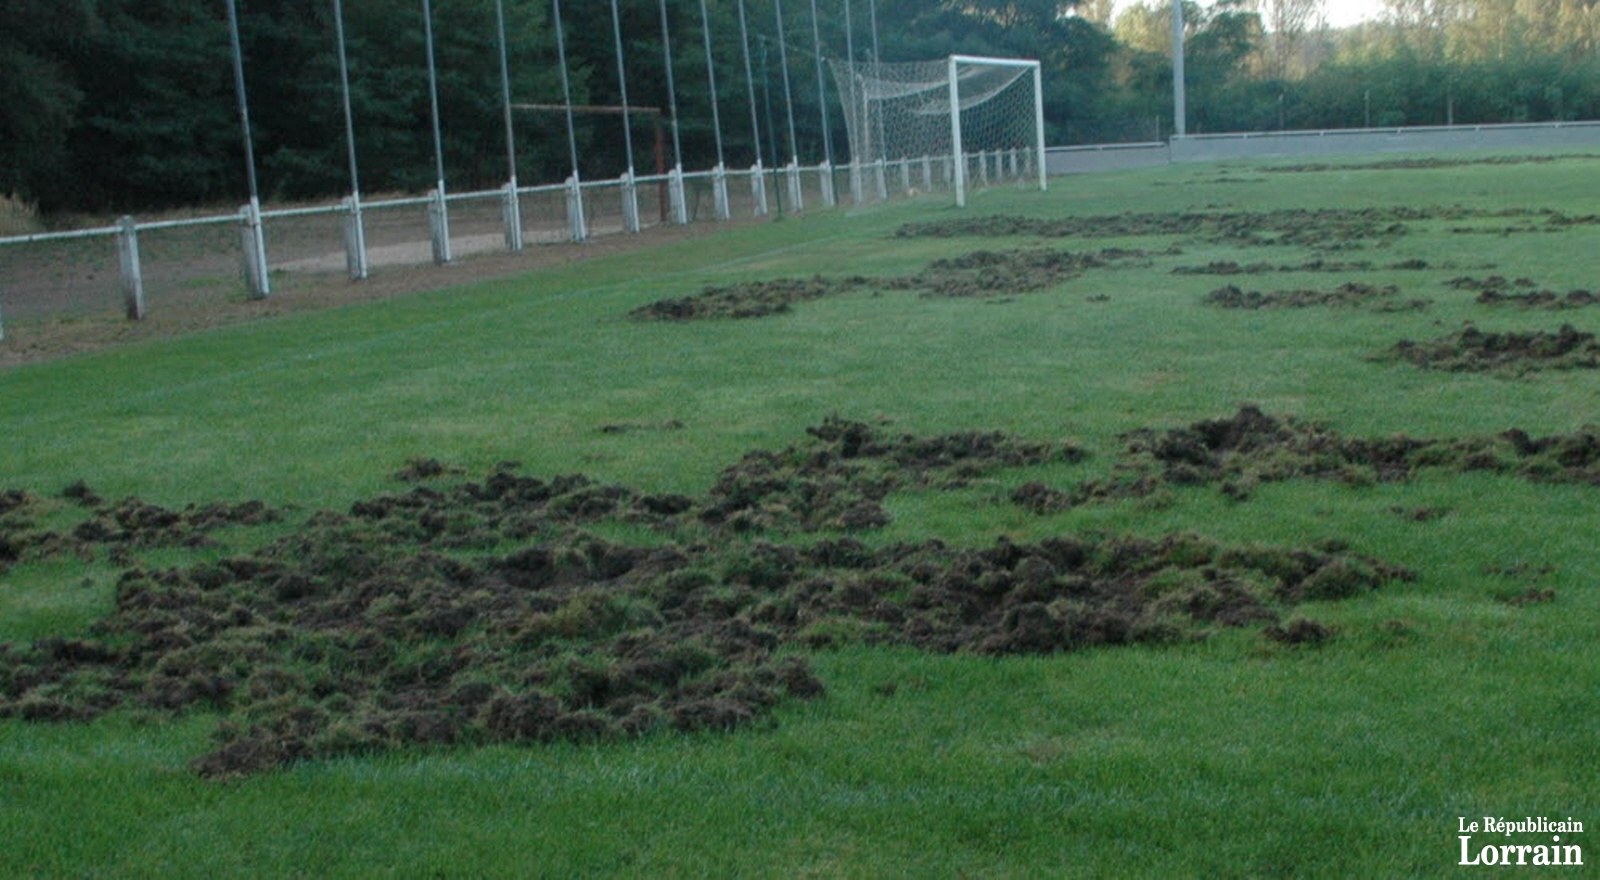 Malgré les barrières, les sangliers ont réussi à pénétrer sur la pelouse du stade Philippe-Schuth.